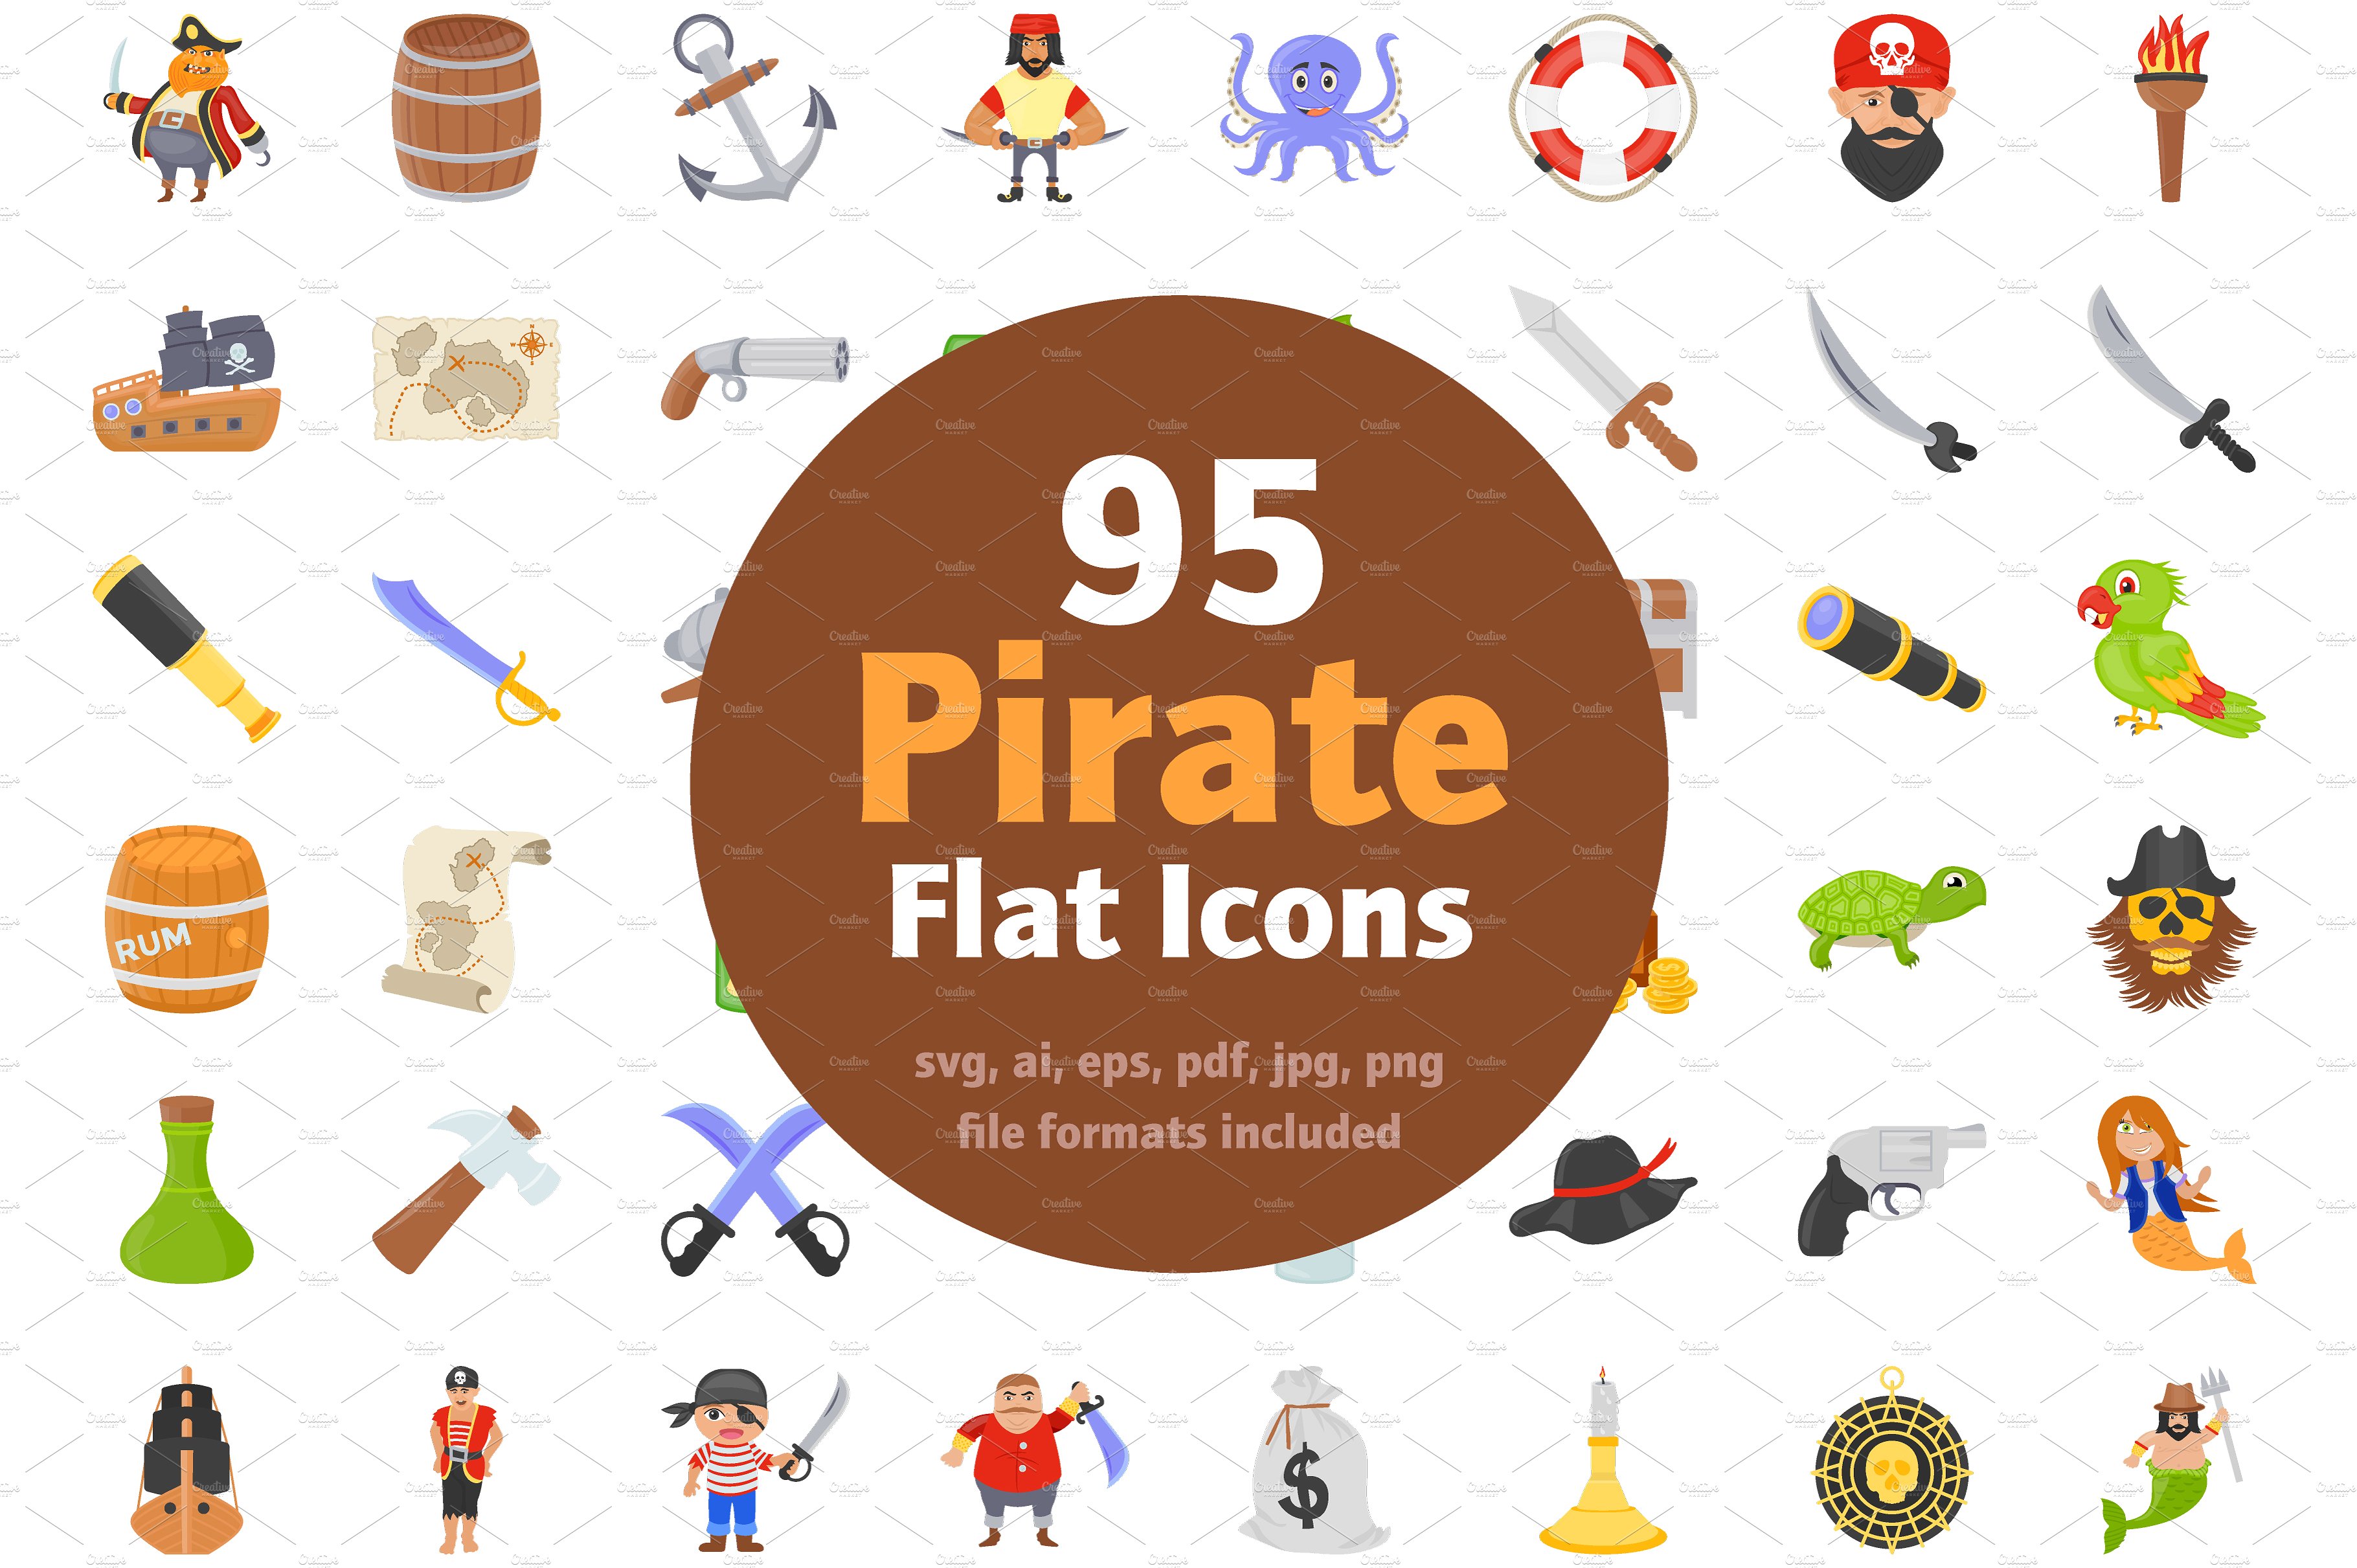 扁平化海盗图标素材 95 Flat Pirate Icons